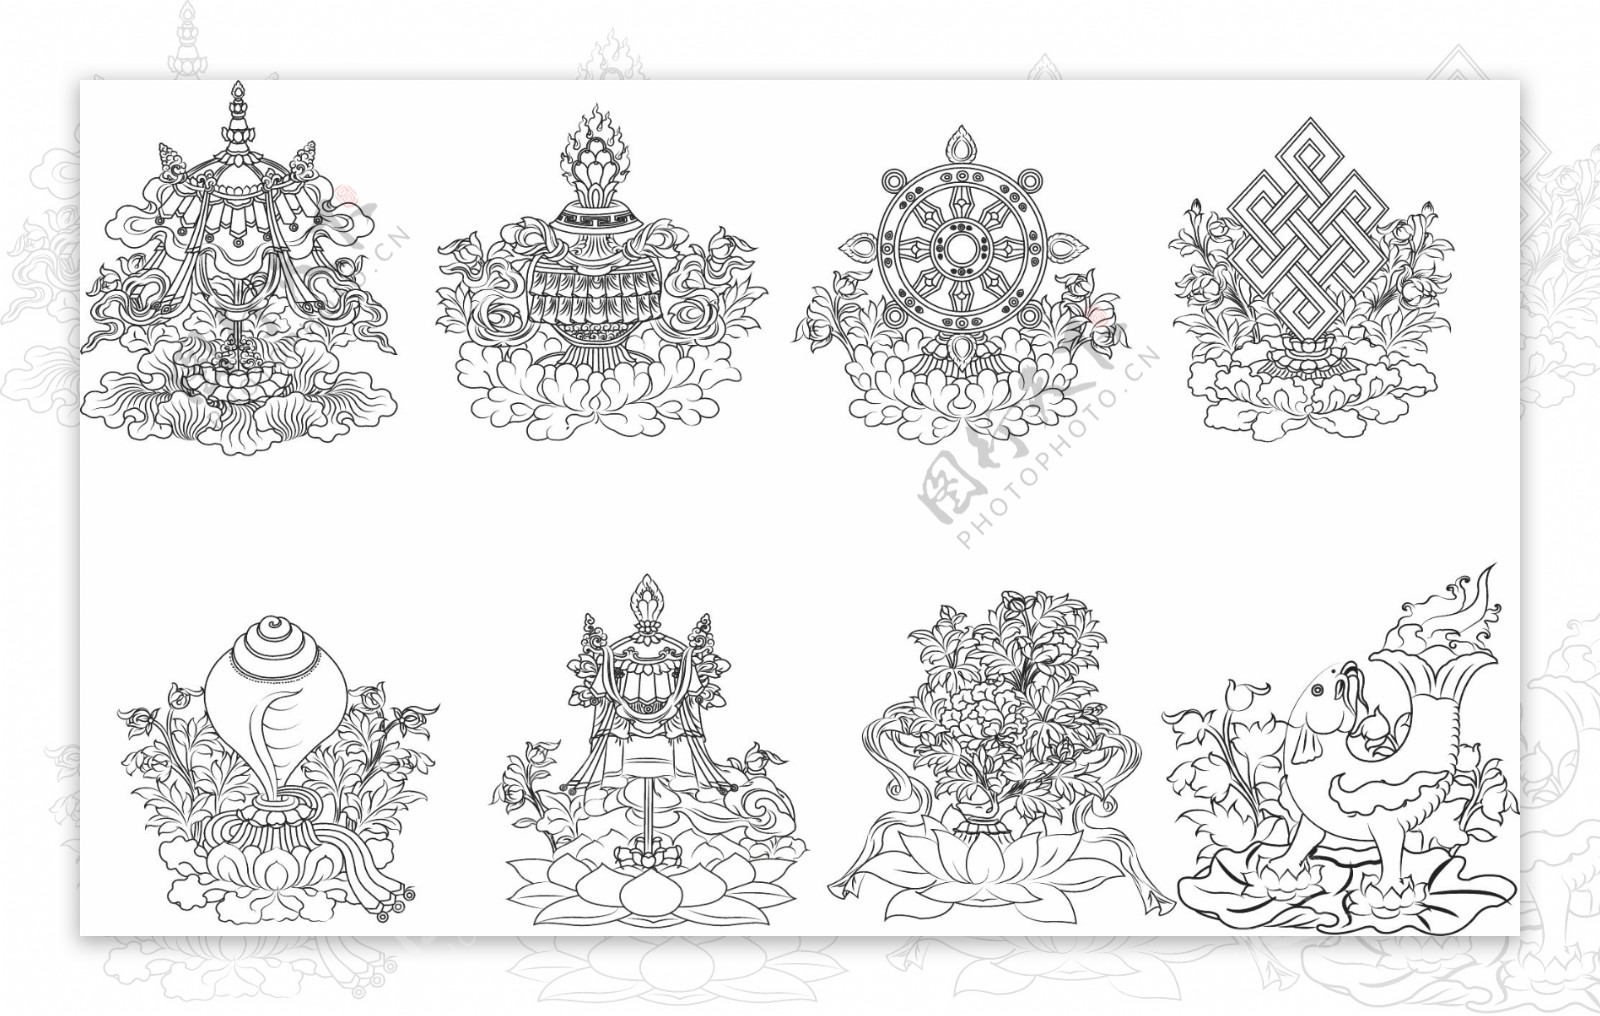 组合式八吉祥图-藏族装饰-图片